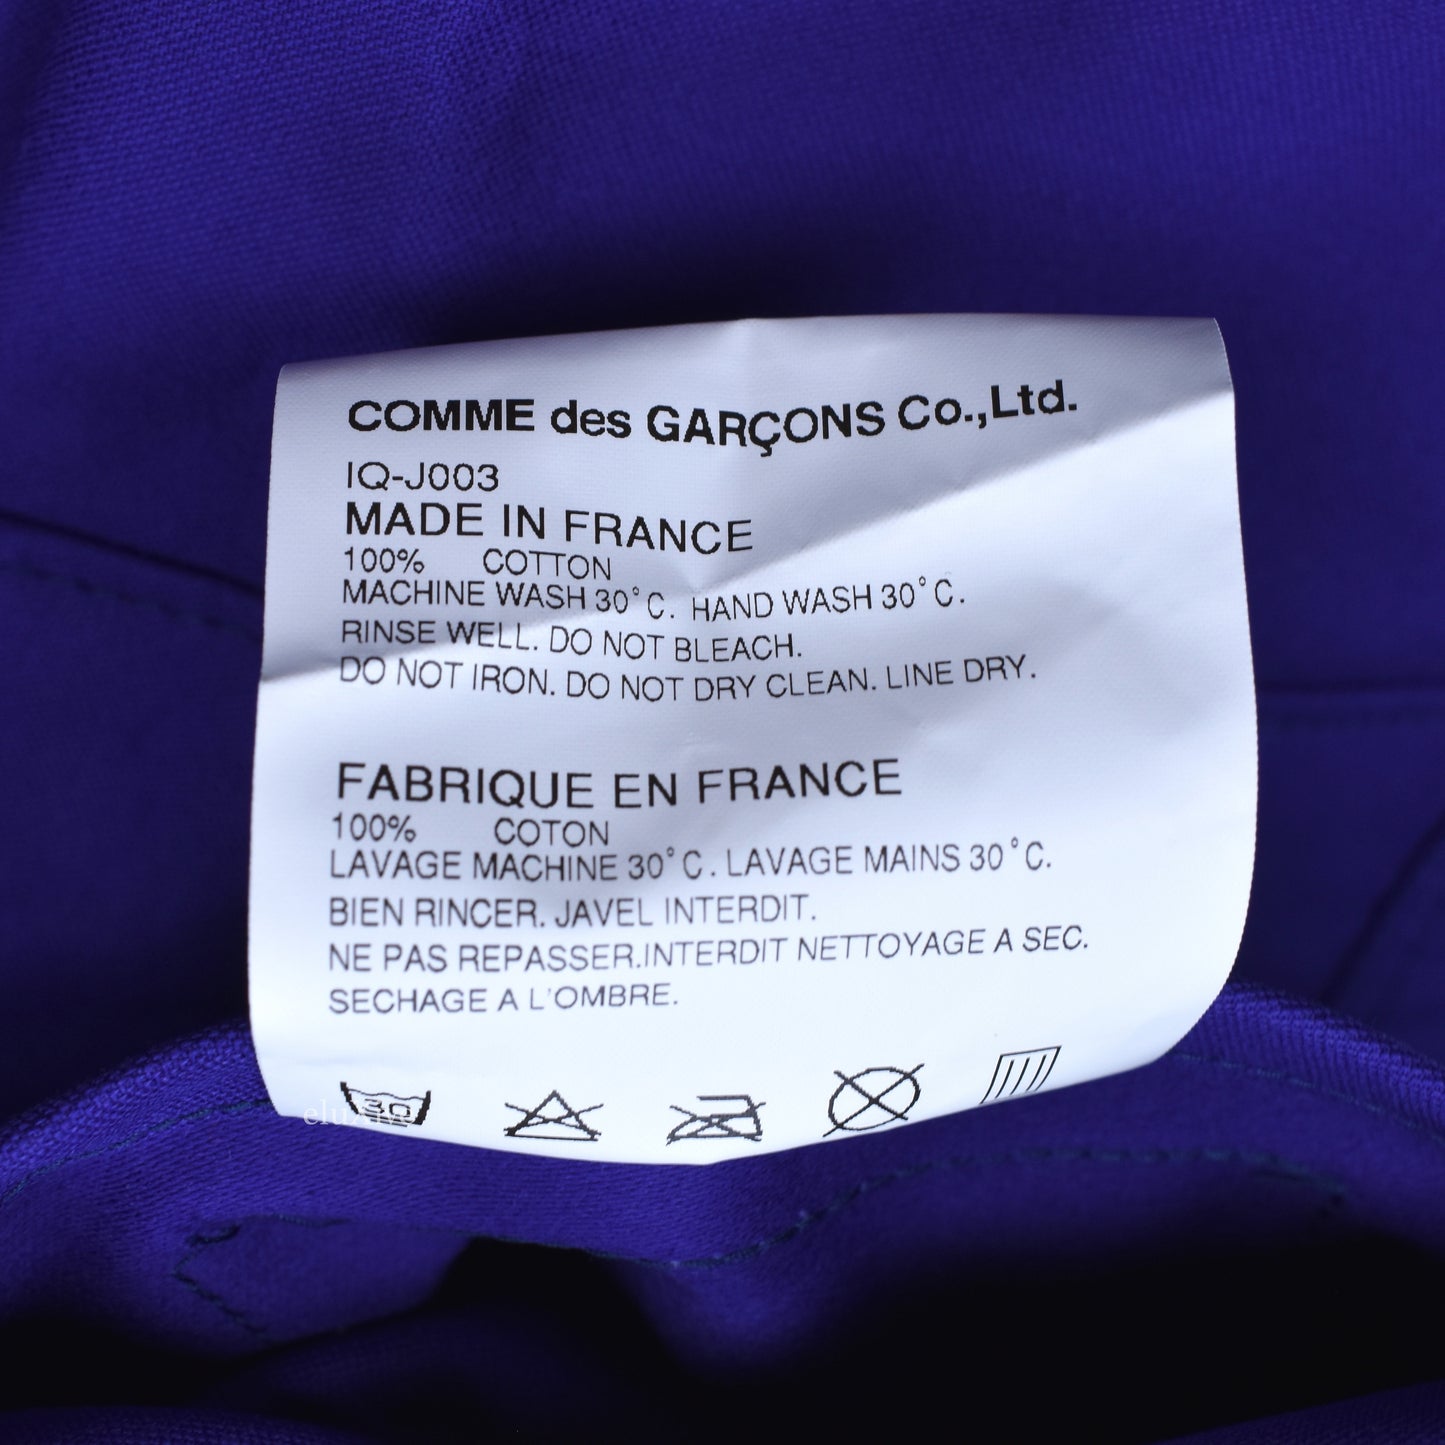 Comme des Garcons - Blue Logo Print Overcoat